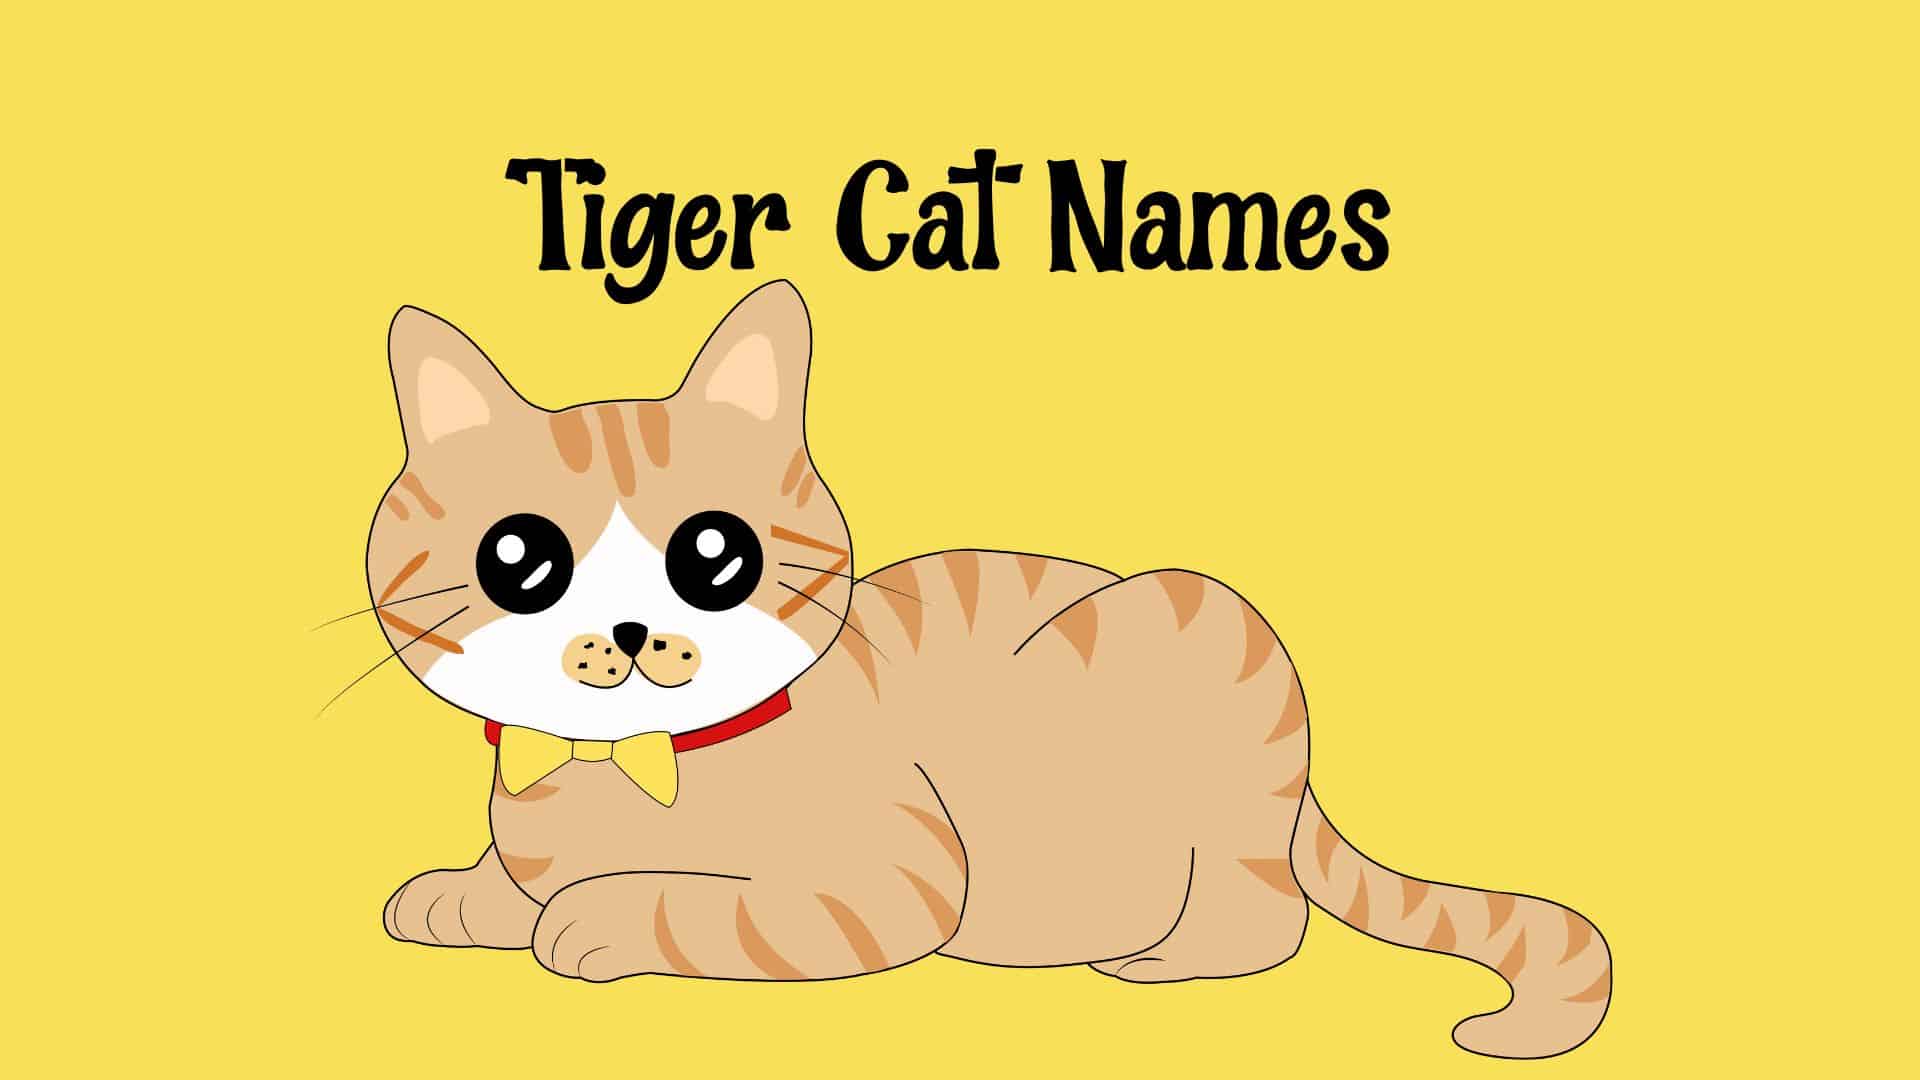 Tiger Cat Names